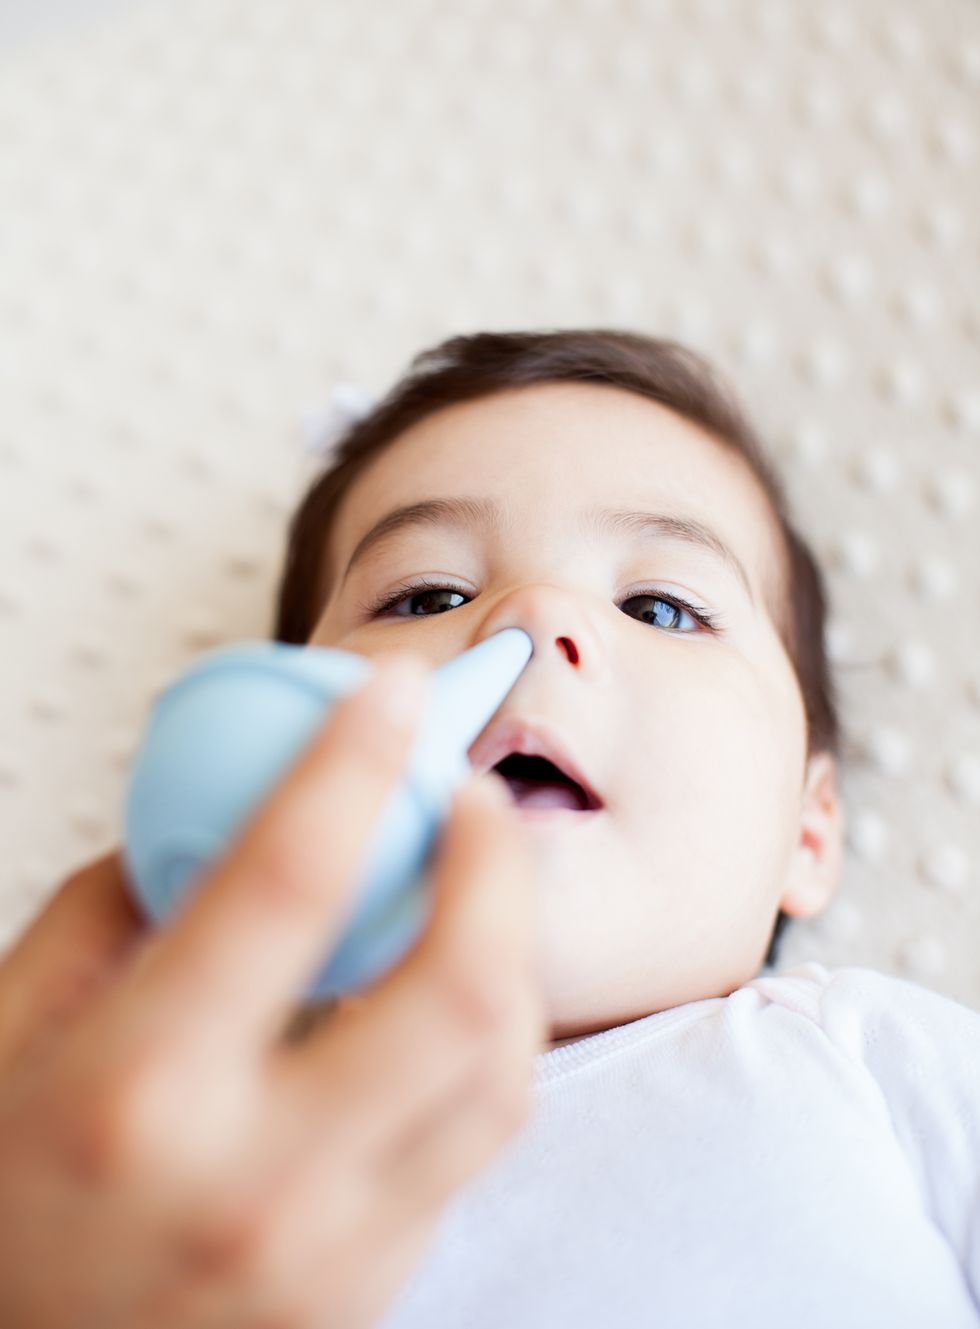 Mocos en bebés: cómo eliminarlos y descongestionar la nariz